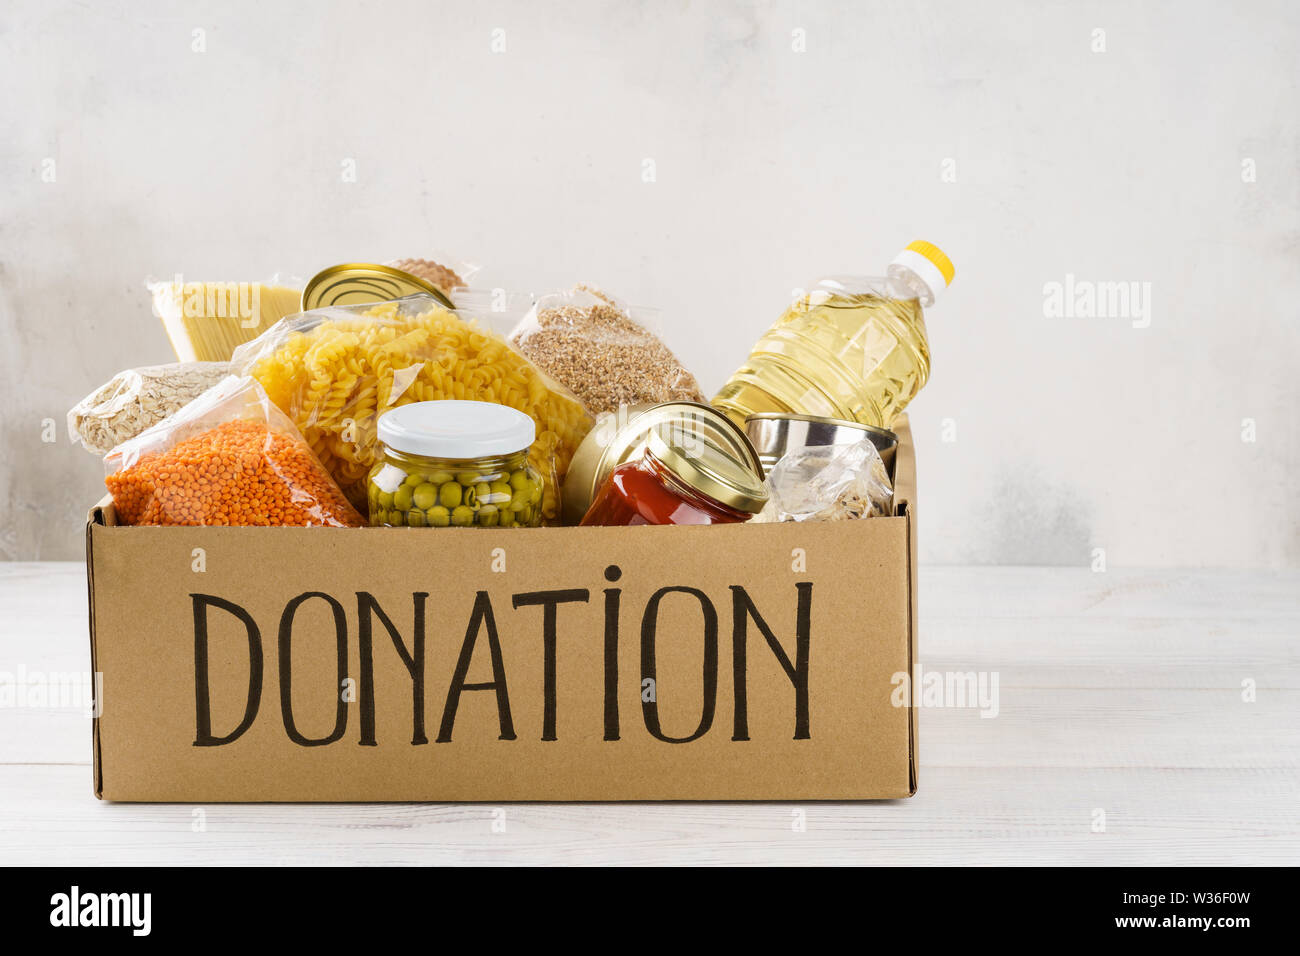 Donation box avec divers aliments. Ouvrir boîte en carton avec de l'huile, de la nourriture en conserve, céréales et pâtes alimentaires. Copier l'espace. Banque D'Images